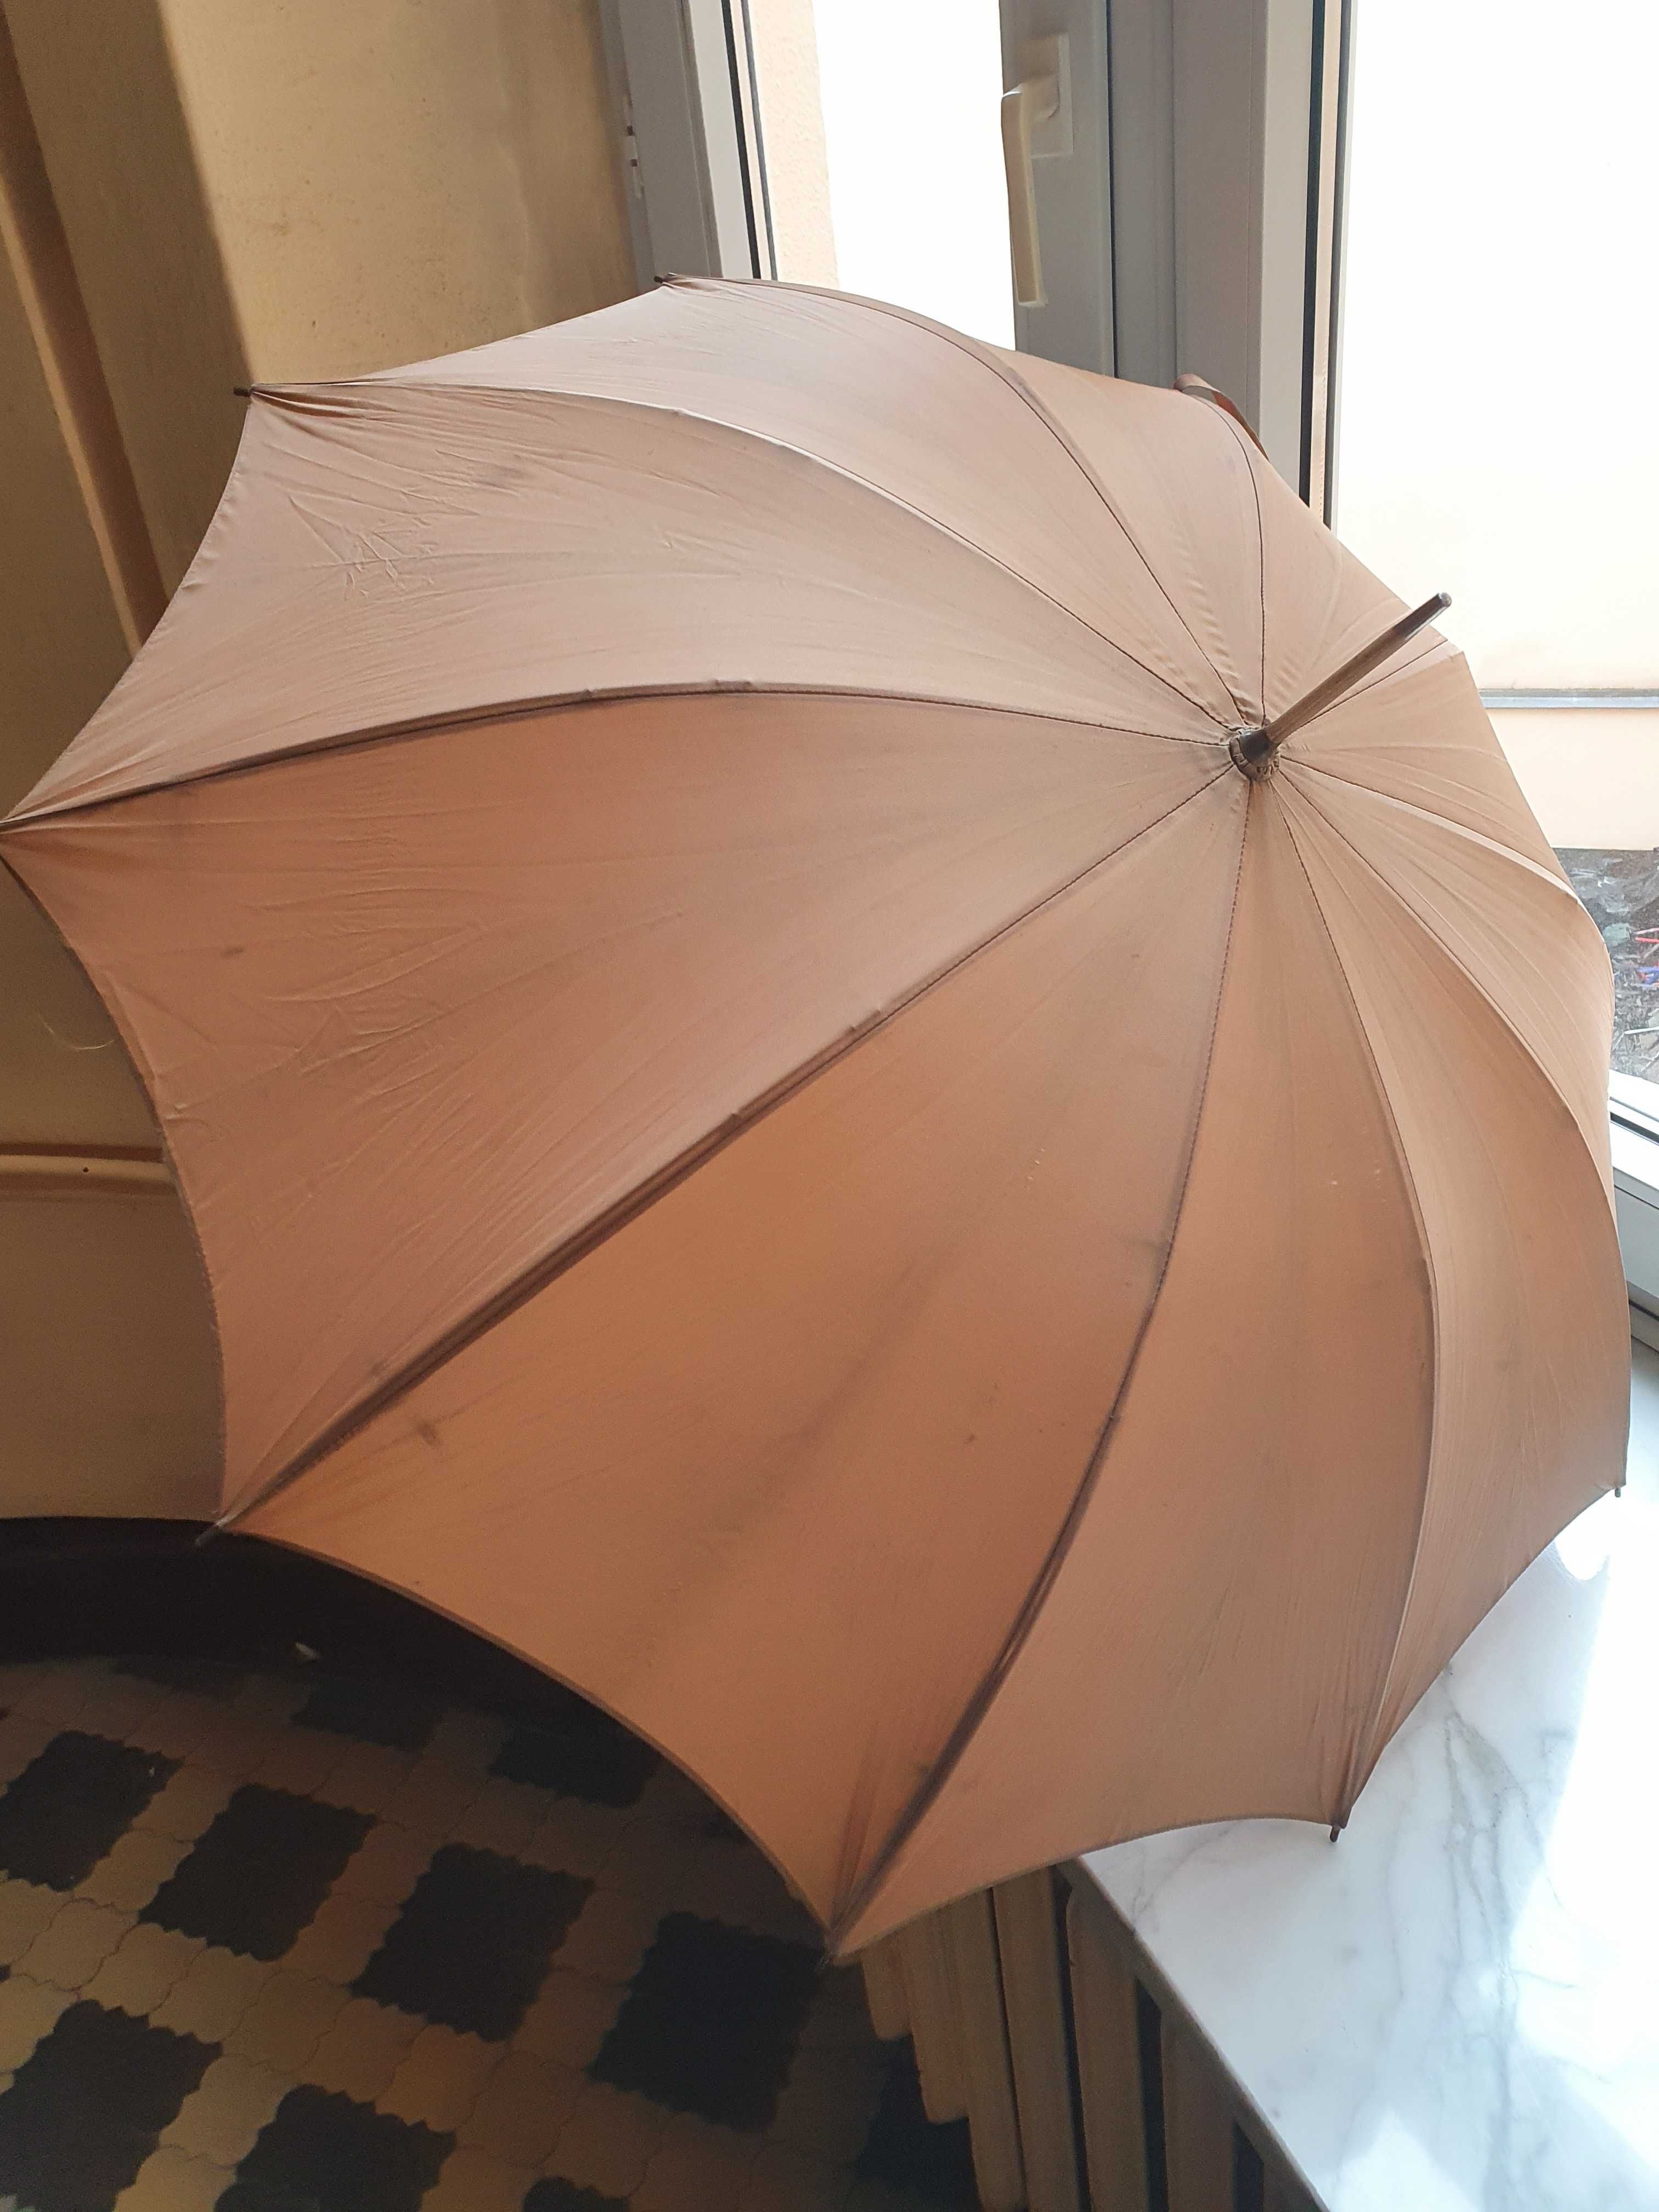 Doskonała do kolekcji lub na plan filmowy/zdjęciowy - stara parasolka.